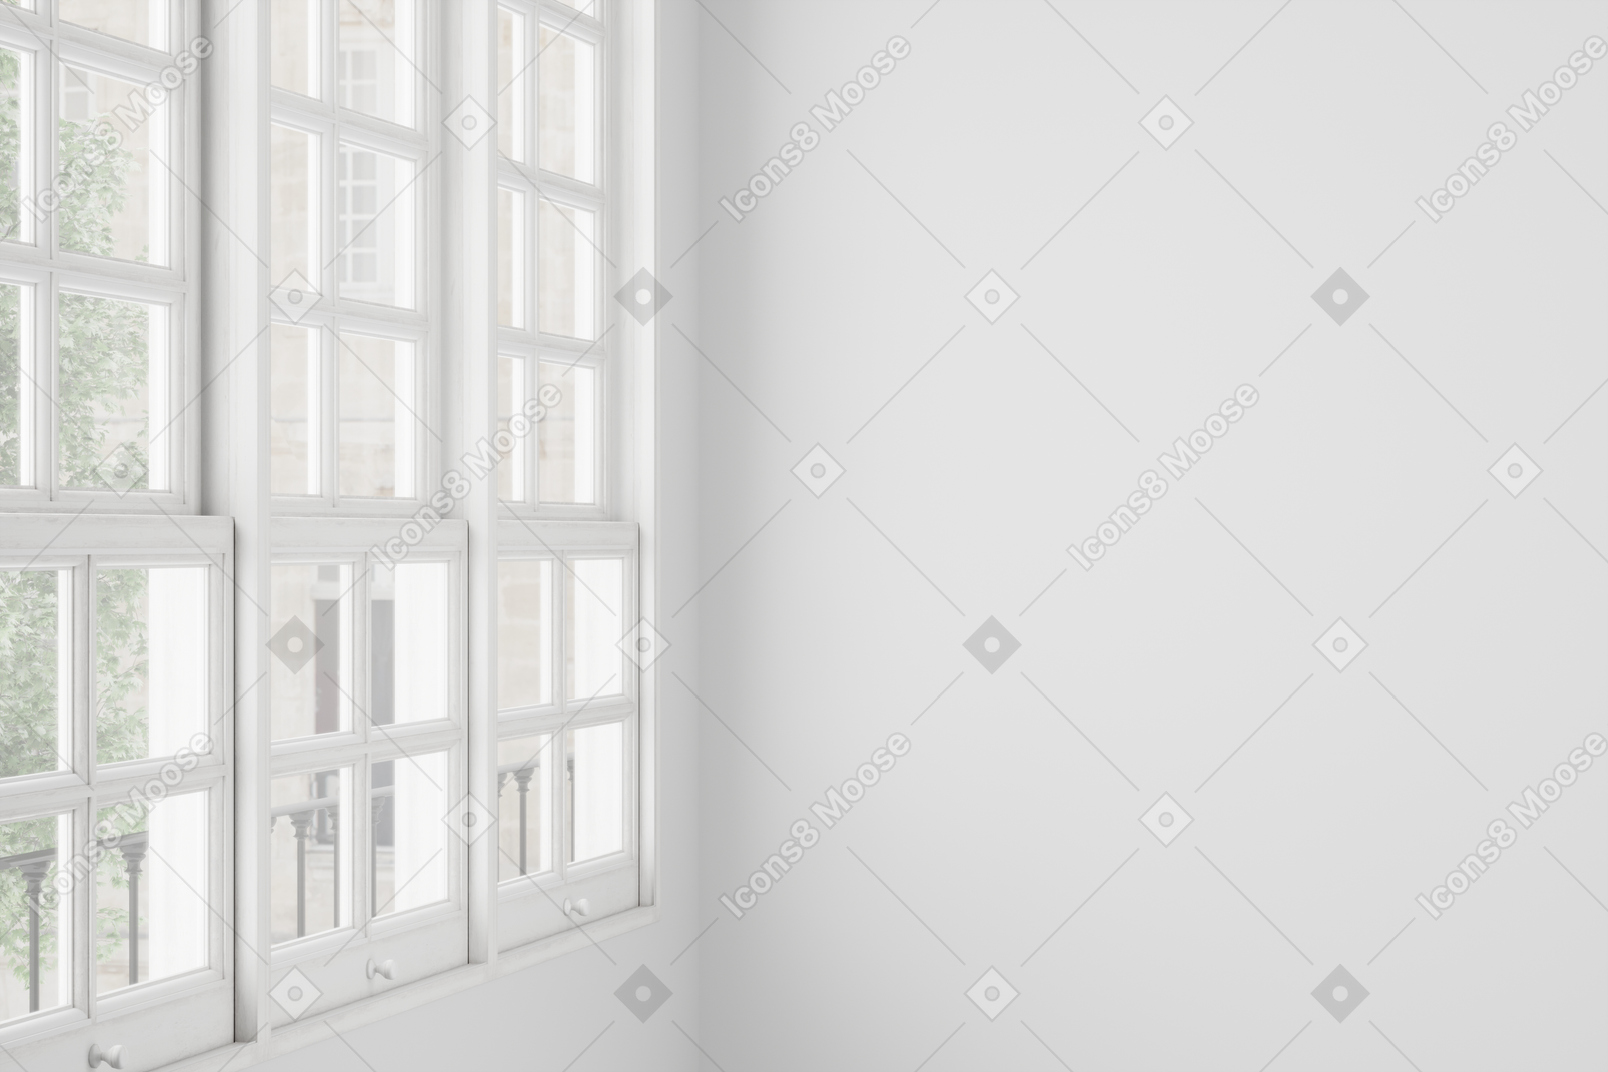 Grande finestra con cornici di legno bianchi